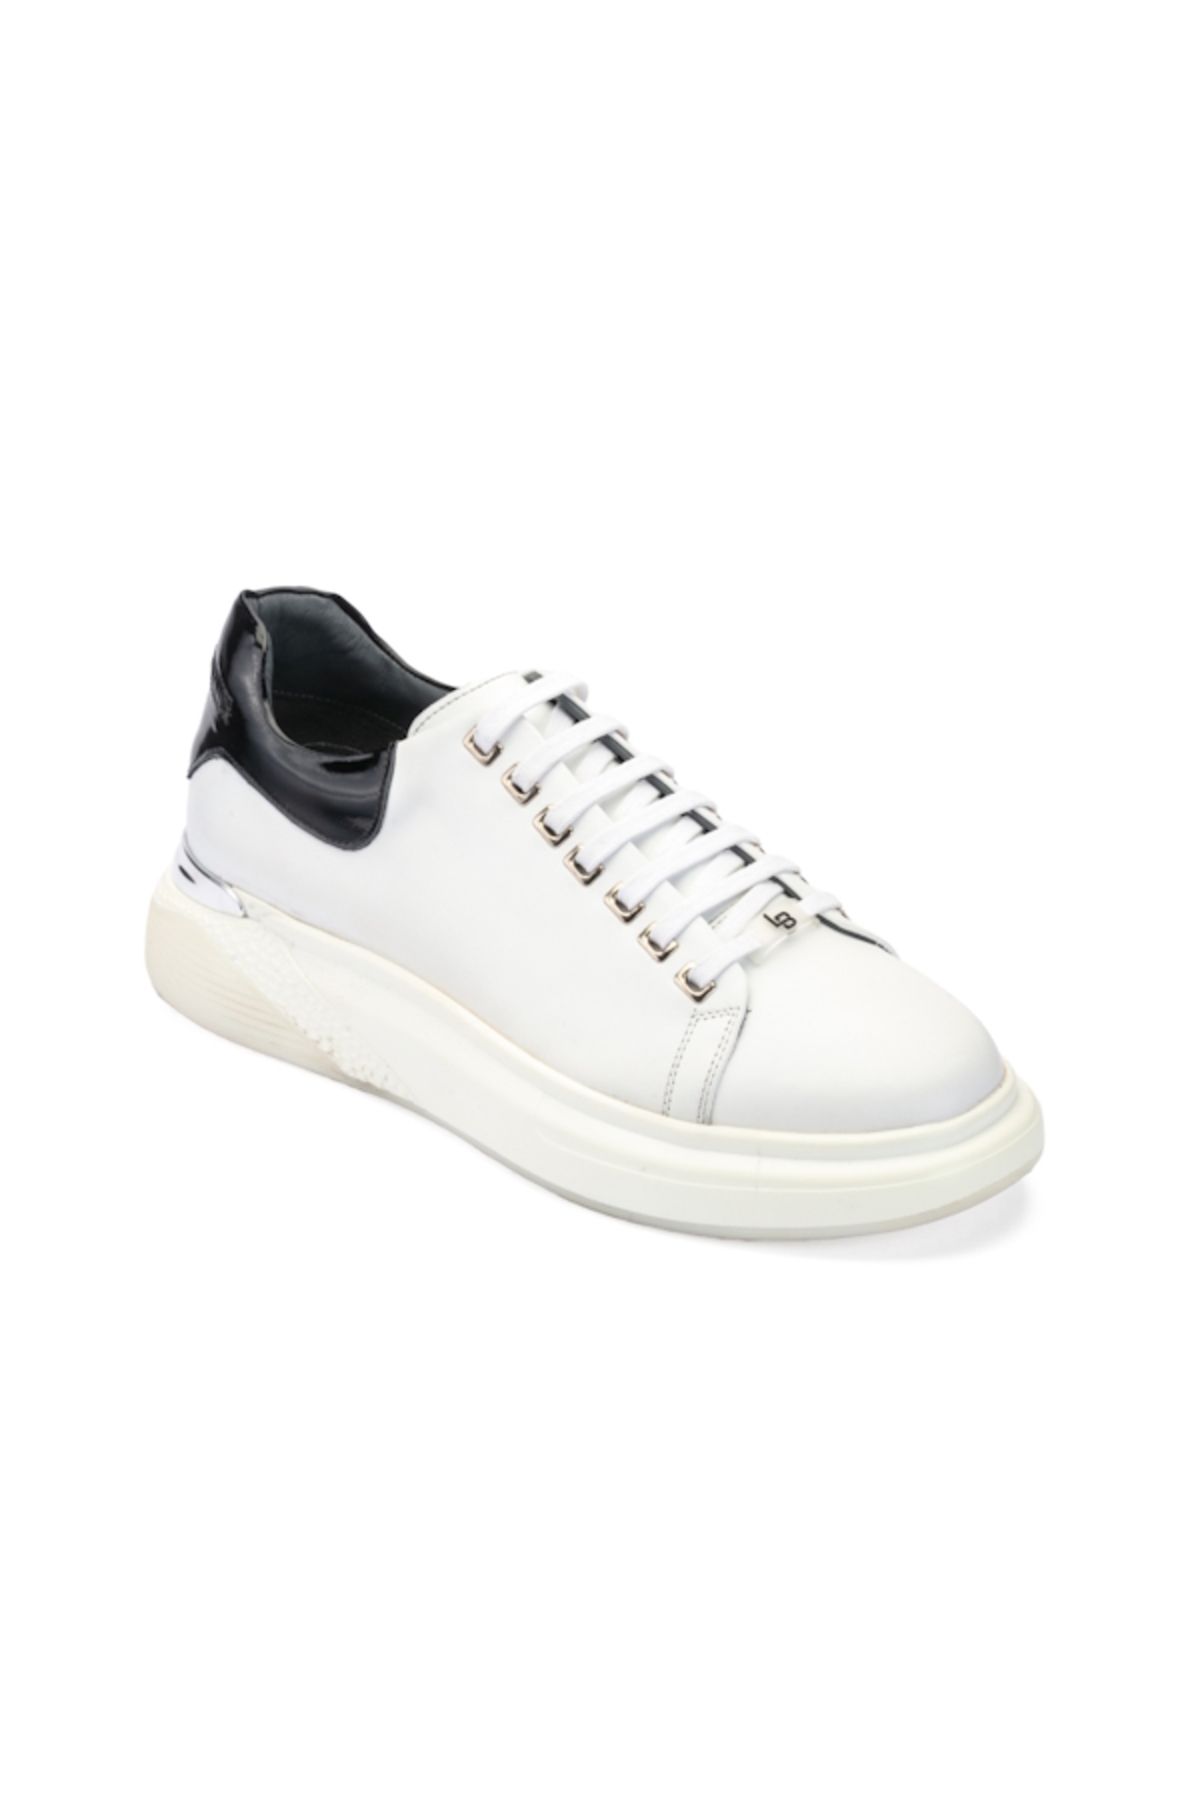 LUCIANO BELLINI A-3201 Beyaz Cilt Deri Erkek Sneaker Ayakkabı